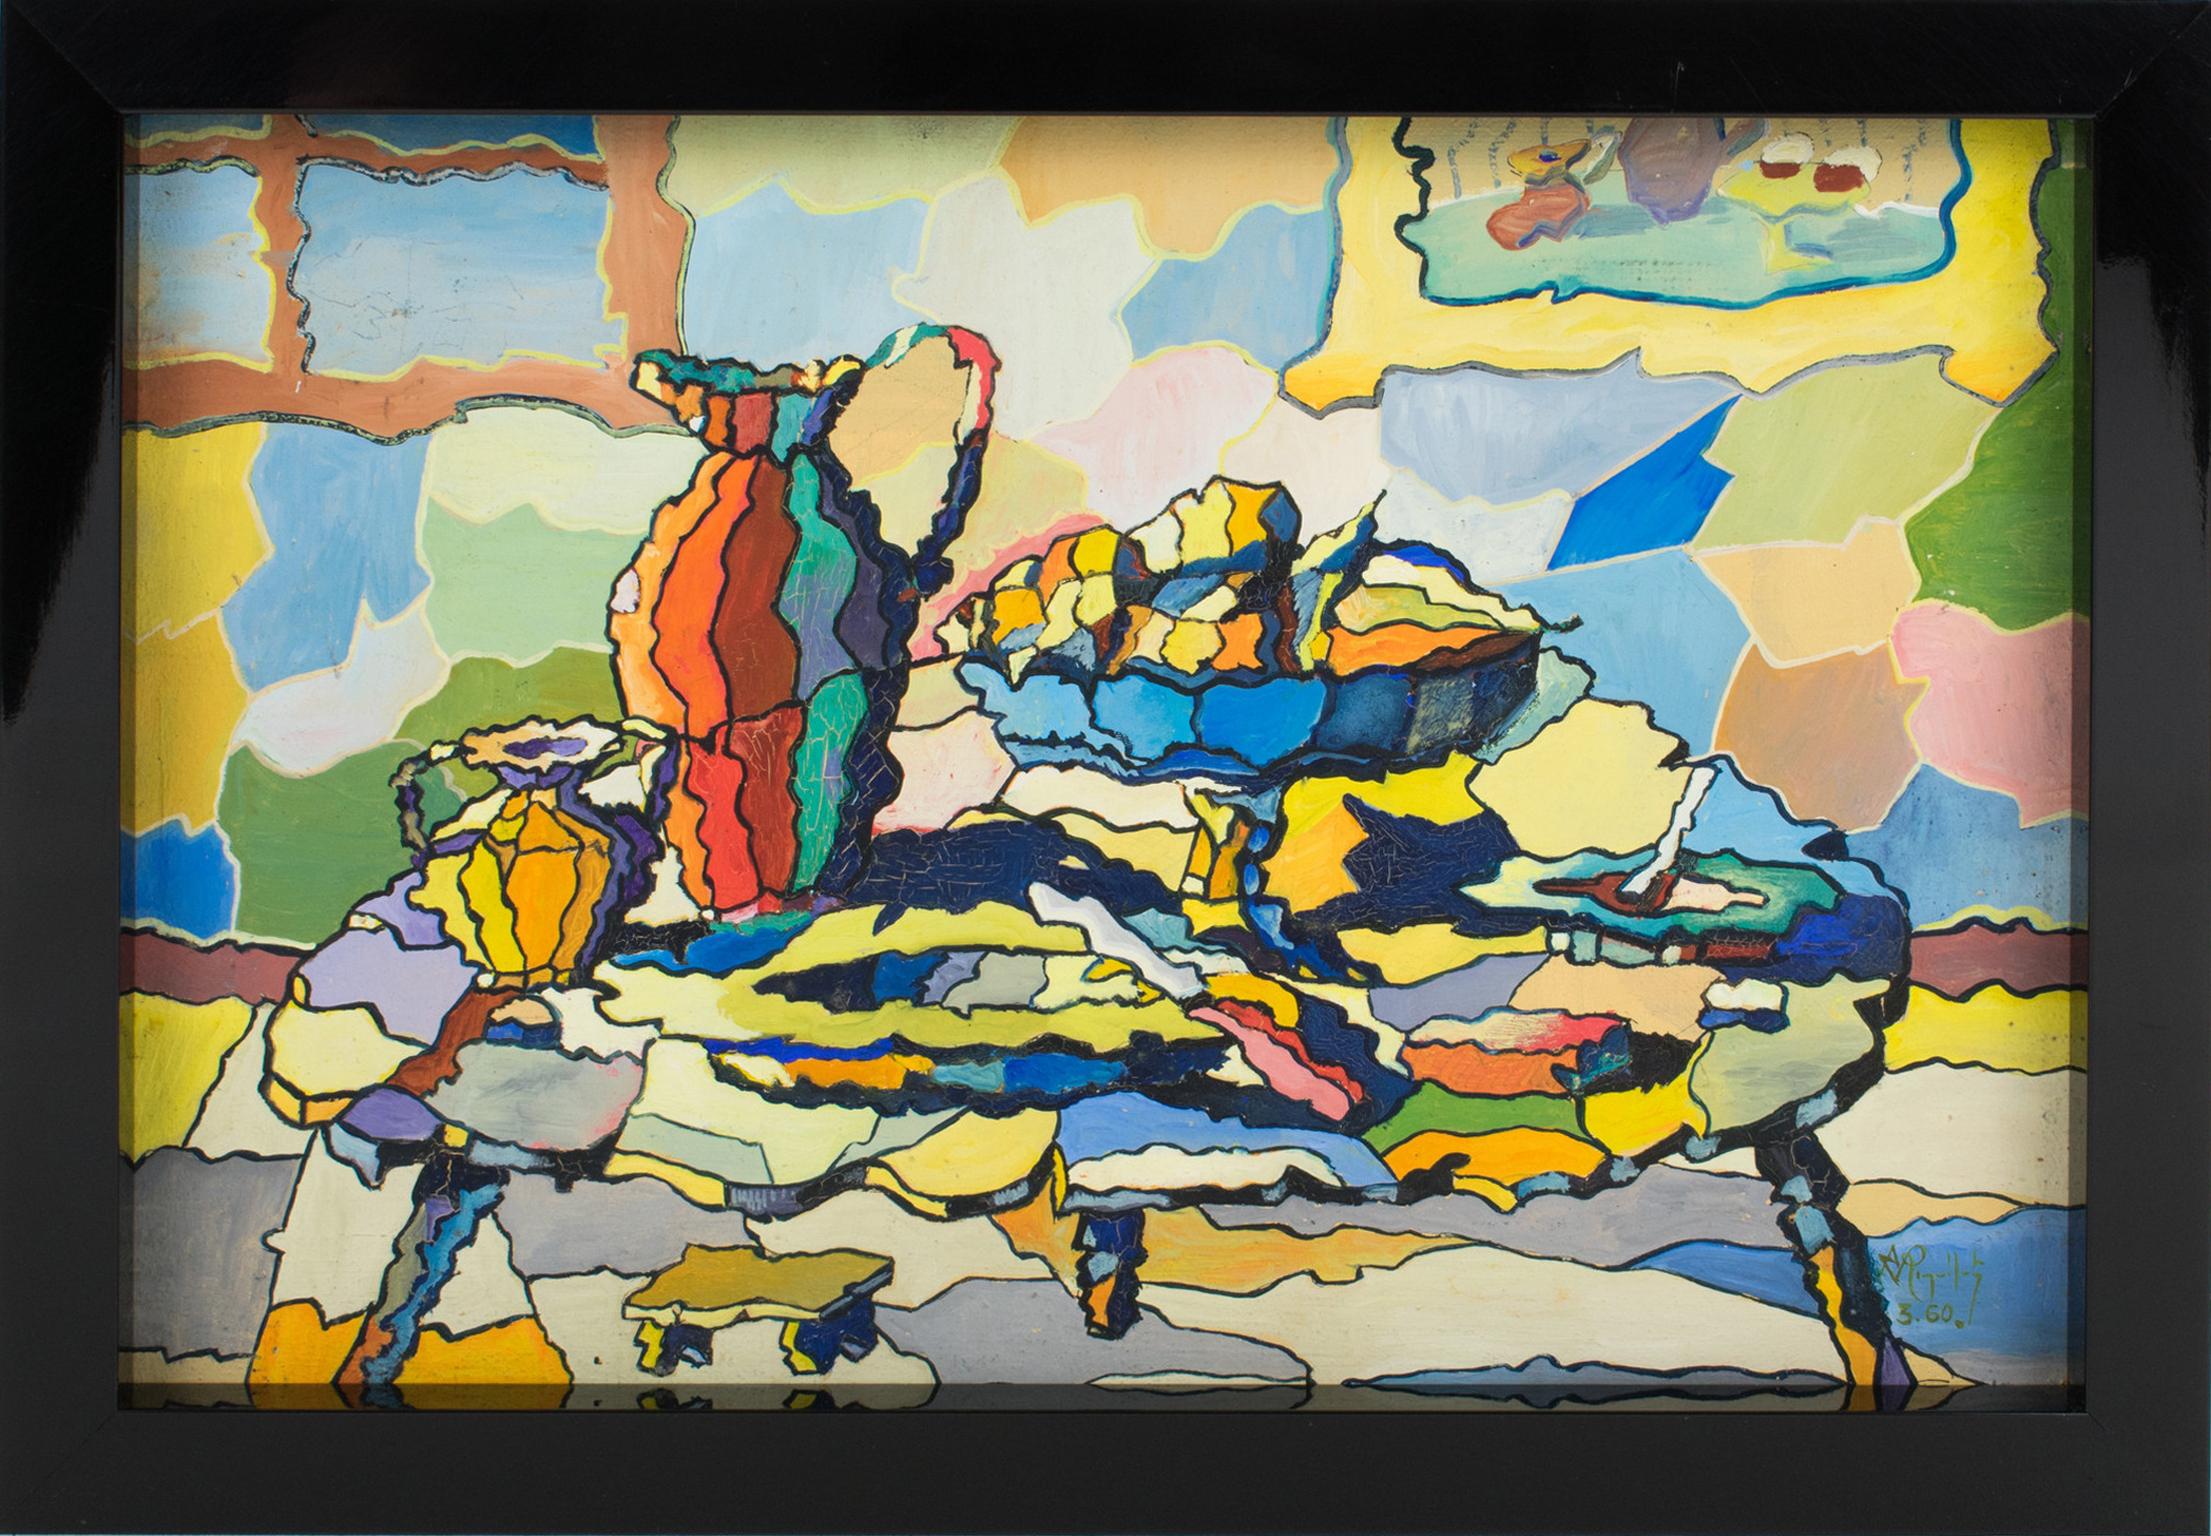 Dieses unglaubliche postkubistische und koloristische Stillleben in Öl auf Karton wurde von A. Rigollot (Frankreich, 20. Jahrhundert) entworfen.
Koloristische Gemälde zeichnen sich durch einen intensiven Farbgebrauch aus, der zum dominierenden